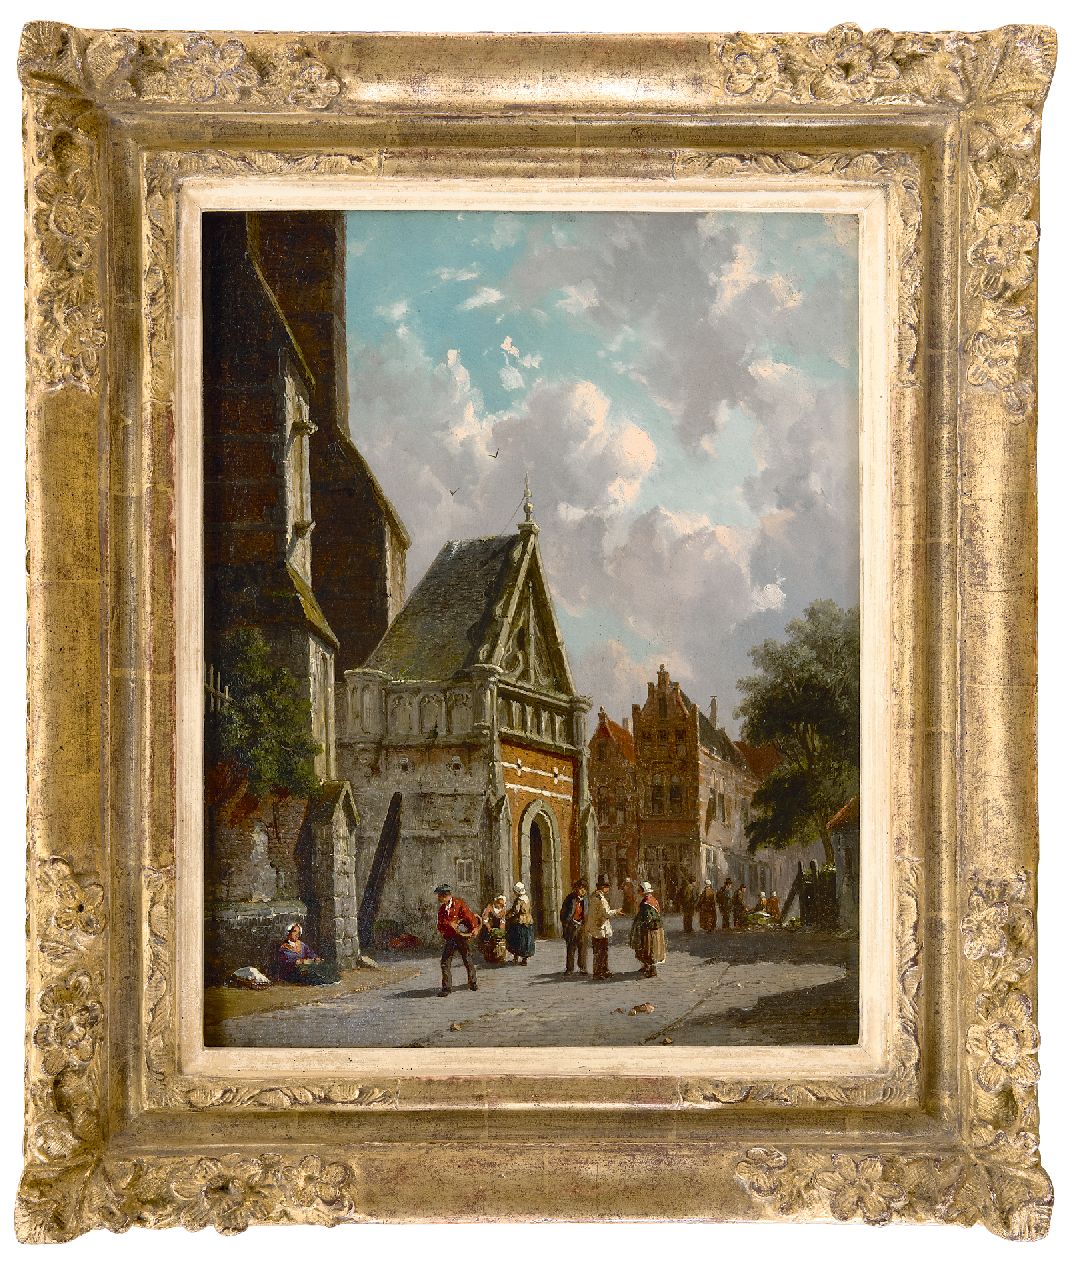 Eversen A.  | Adrianus Eversen | Schilderijen te koop aangeboden | Achter de kerk (zomers pendant), olieverf op paneel 34,8 x 27,0 cm, gesigneerd rechtsonder